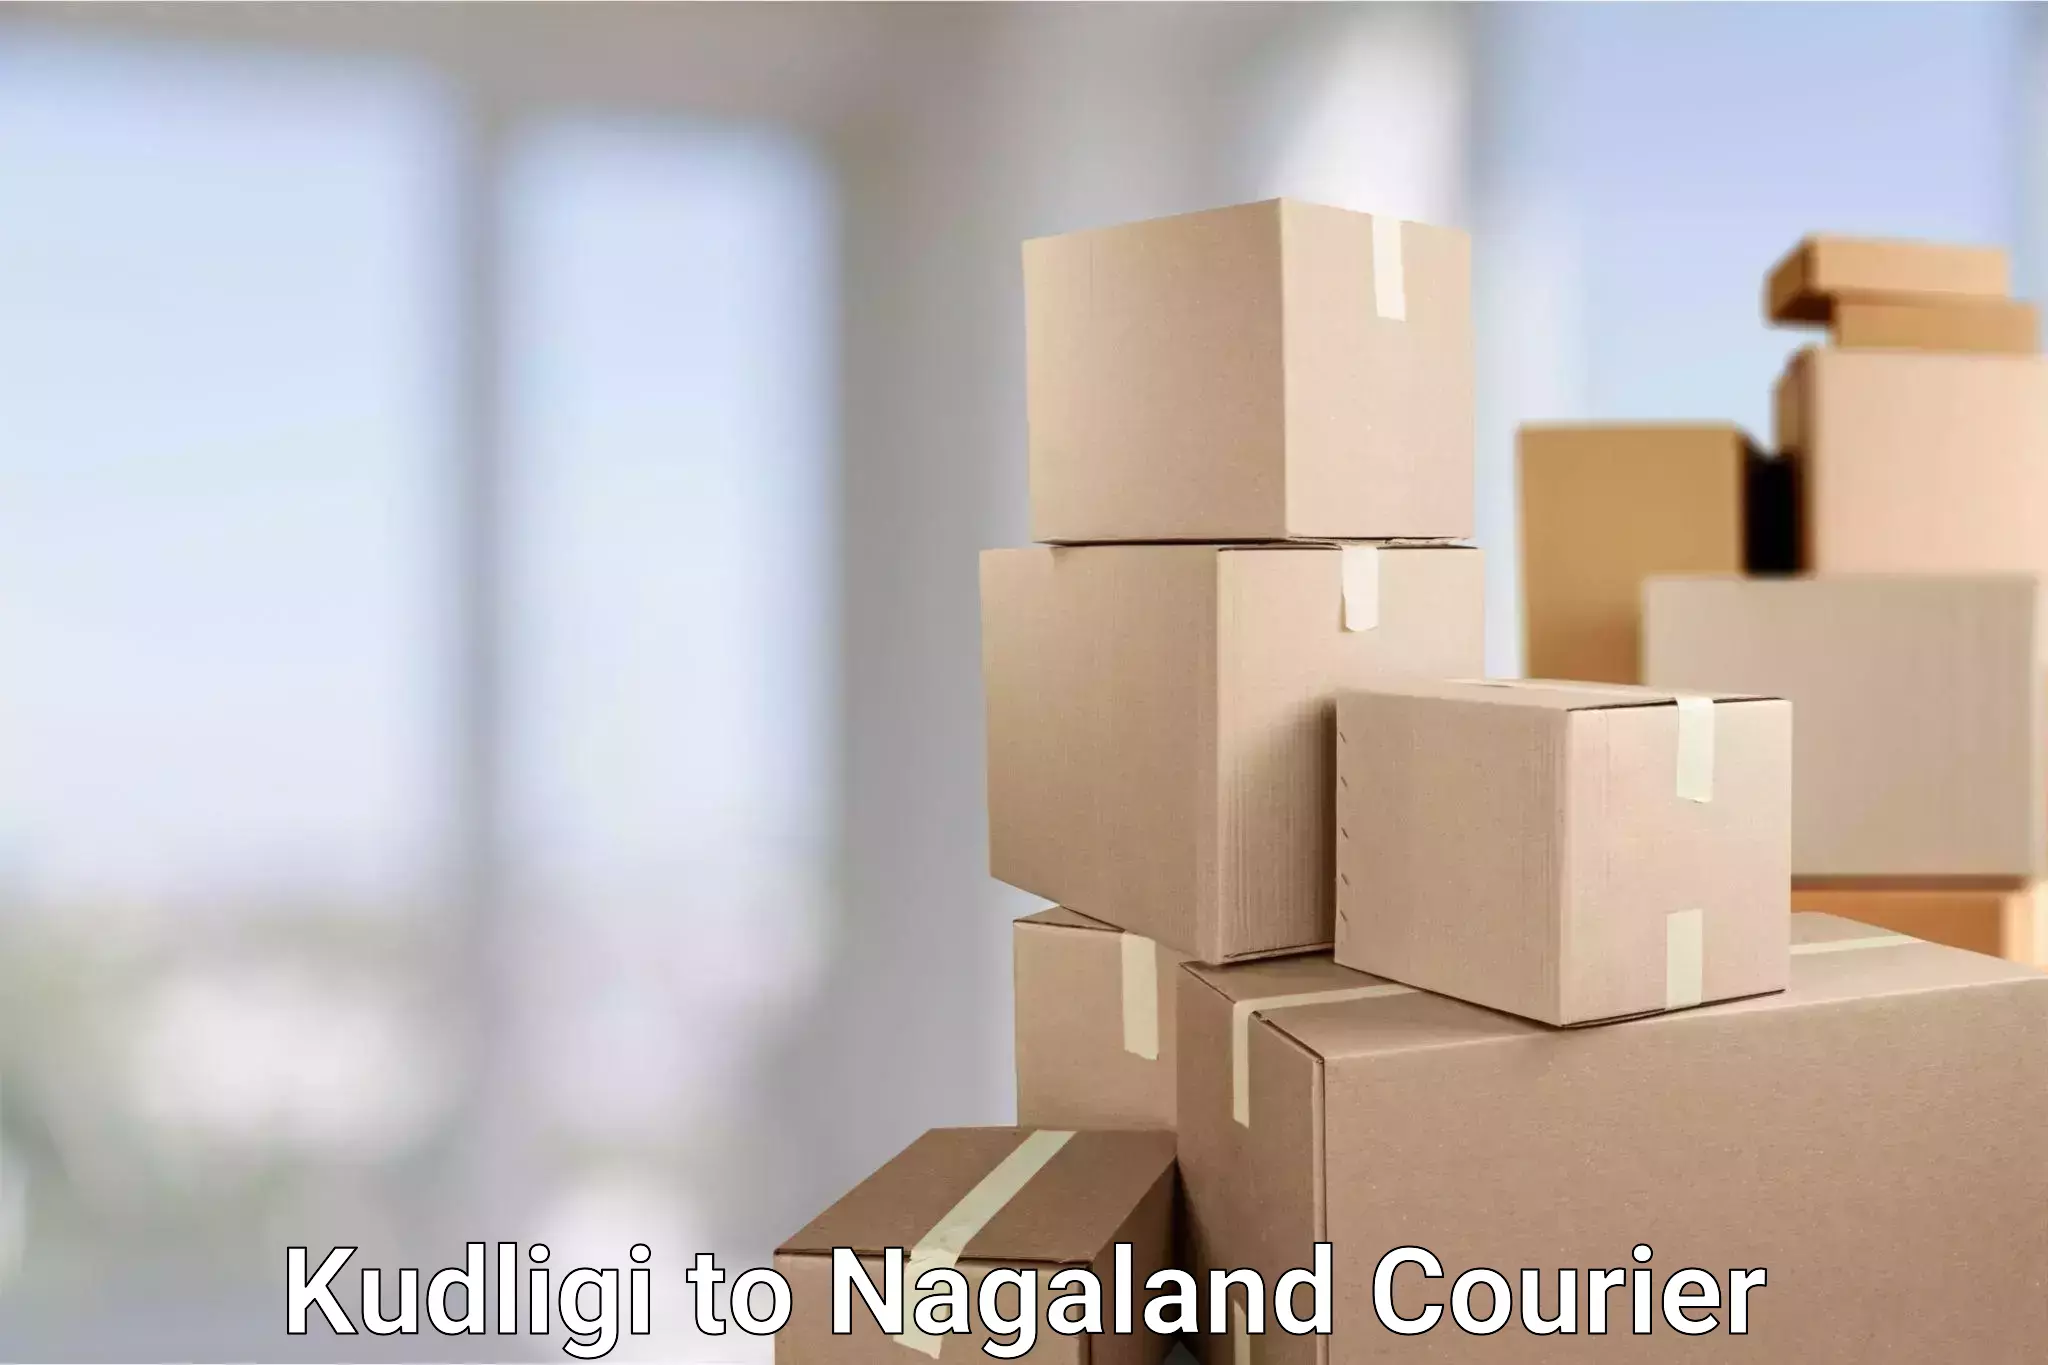 Urgent courier needs Kudligi to NIT Nagaland